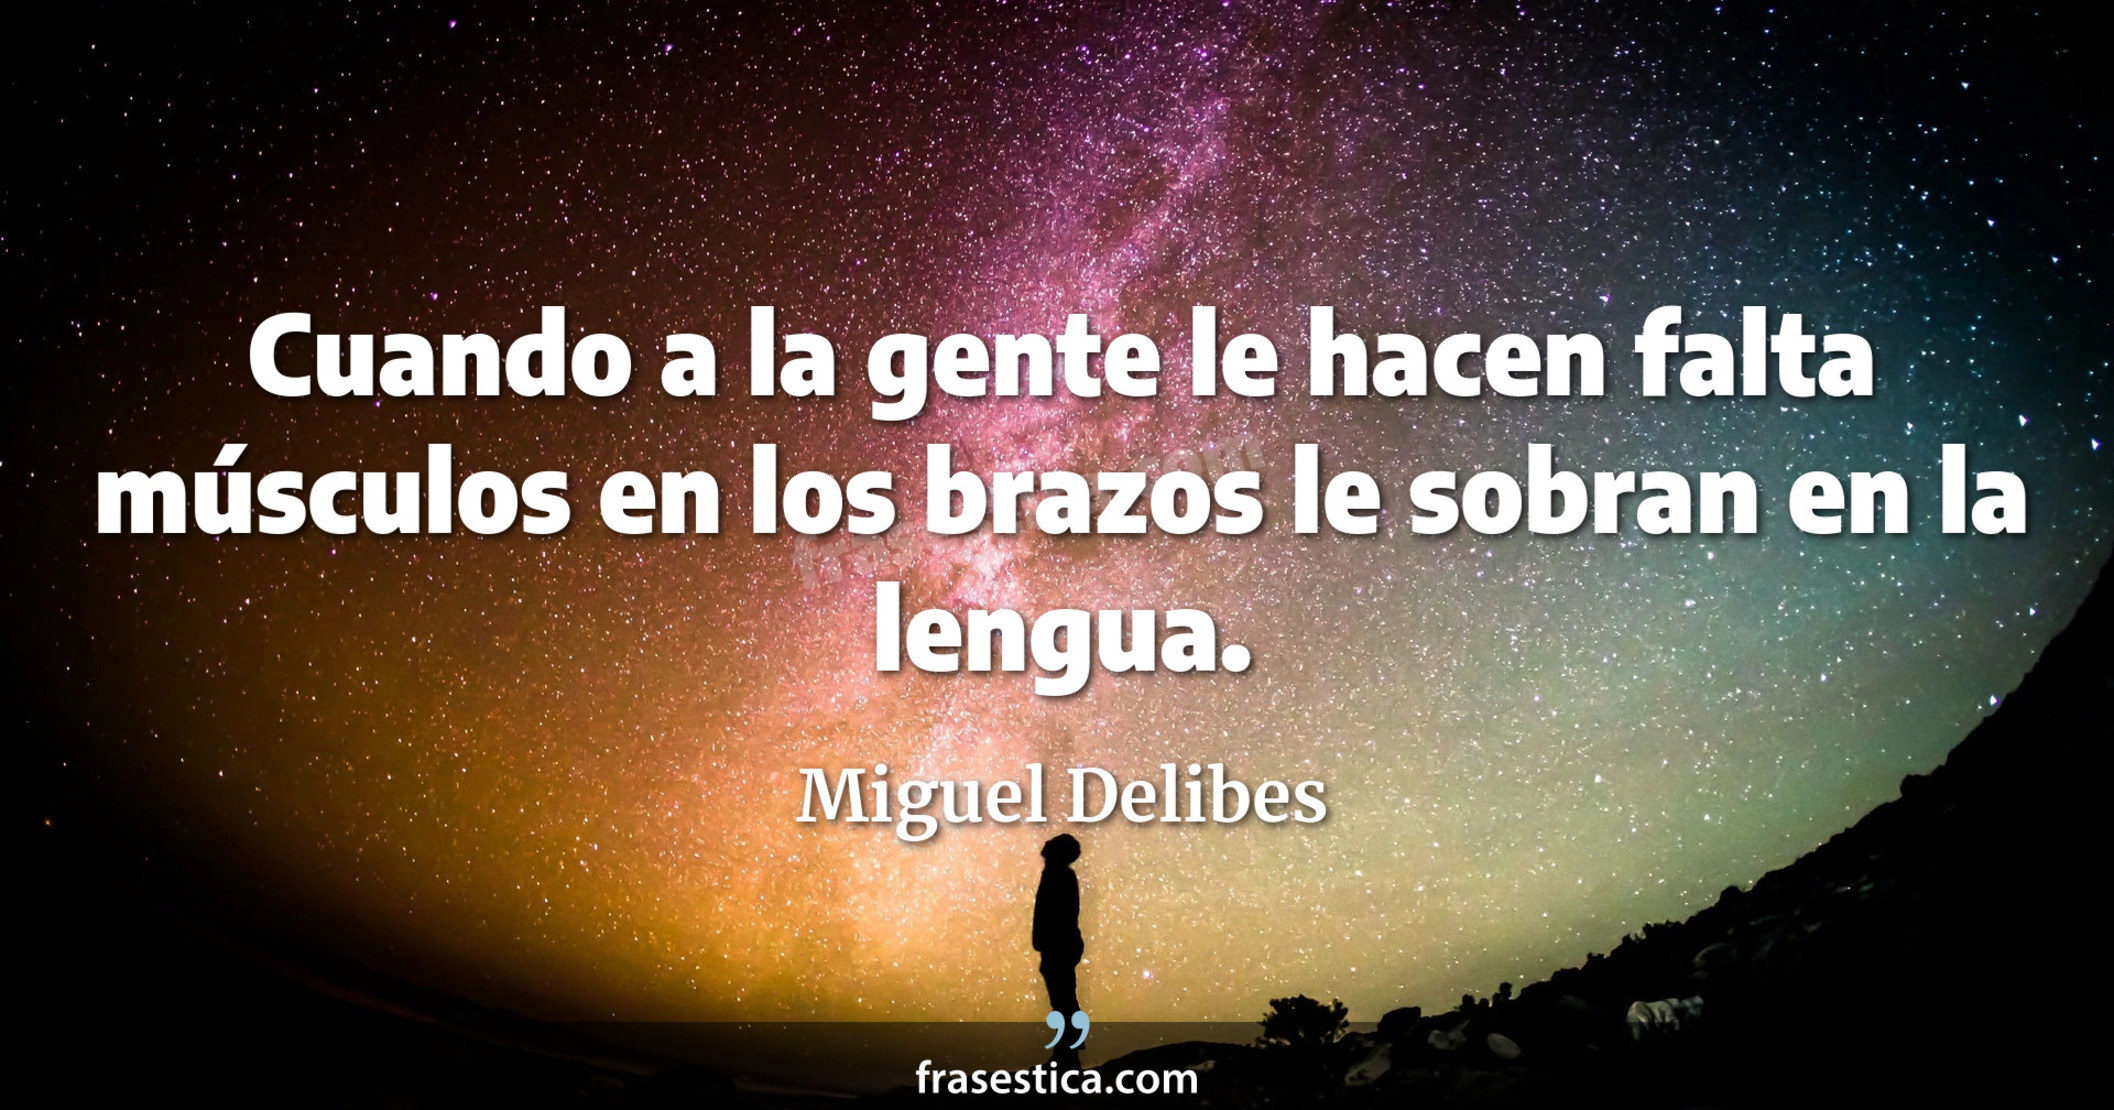 Cuando a la gente le hacen falta músculos en los brazos le sobran en la lengua. - Miguel Delibes